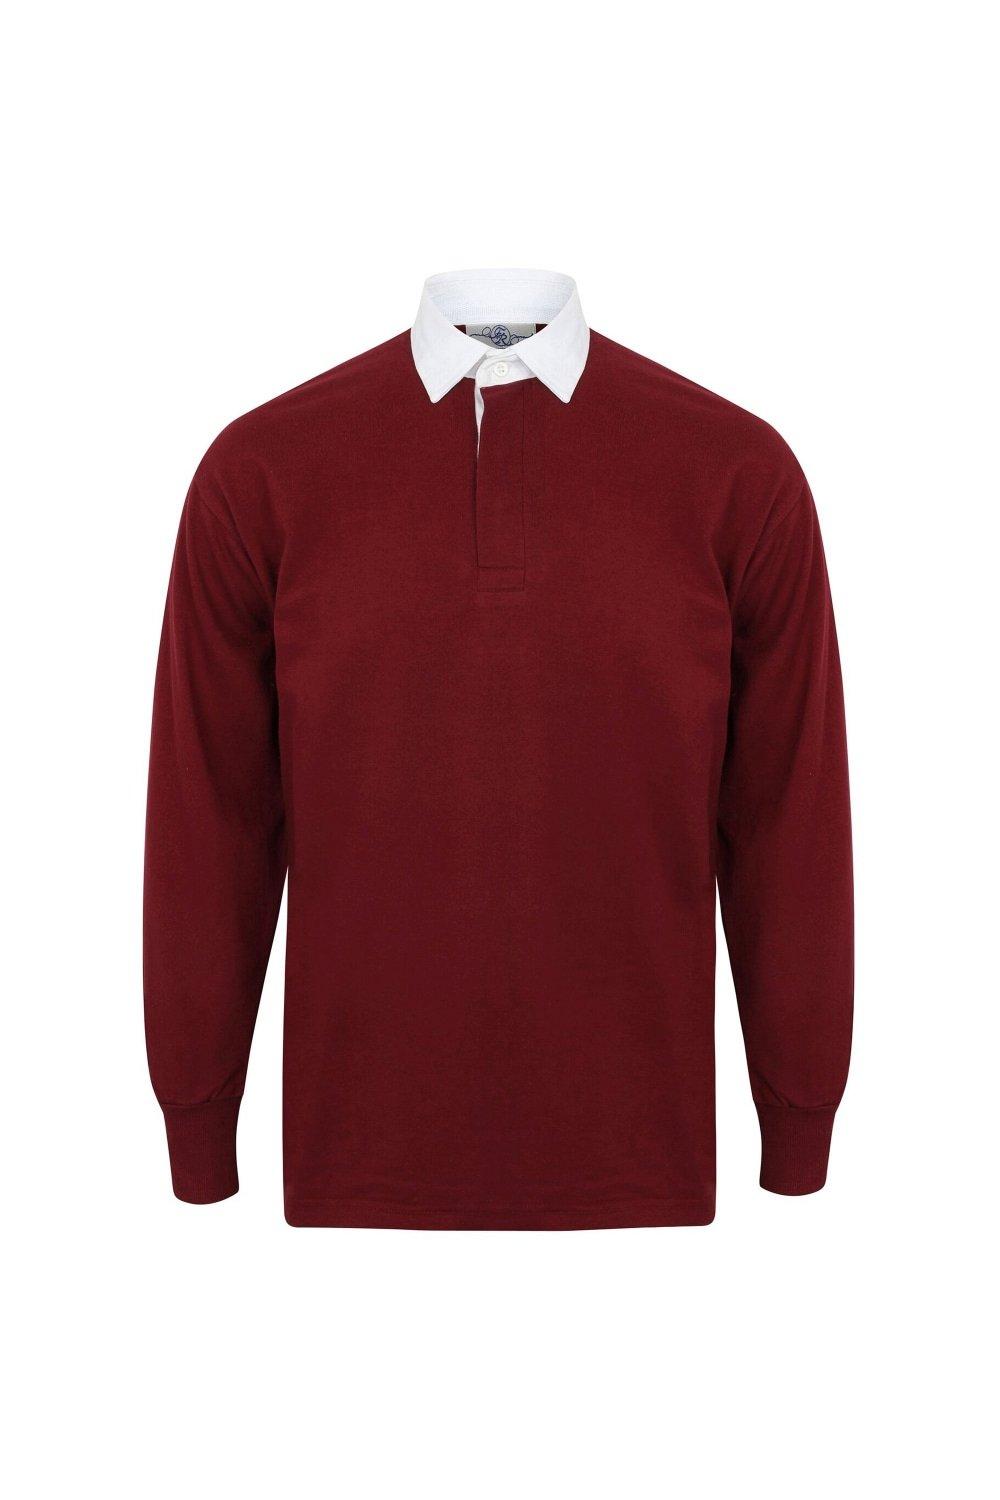 Классическая рубашка-поло для регби с длинным рукавом Front Row, красный front row shop pубашка